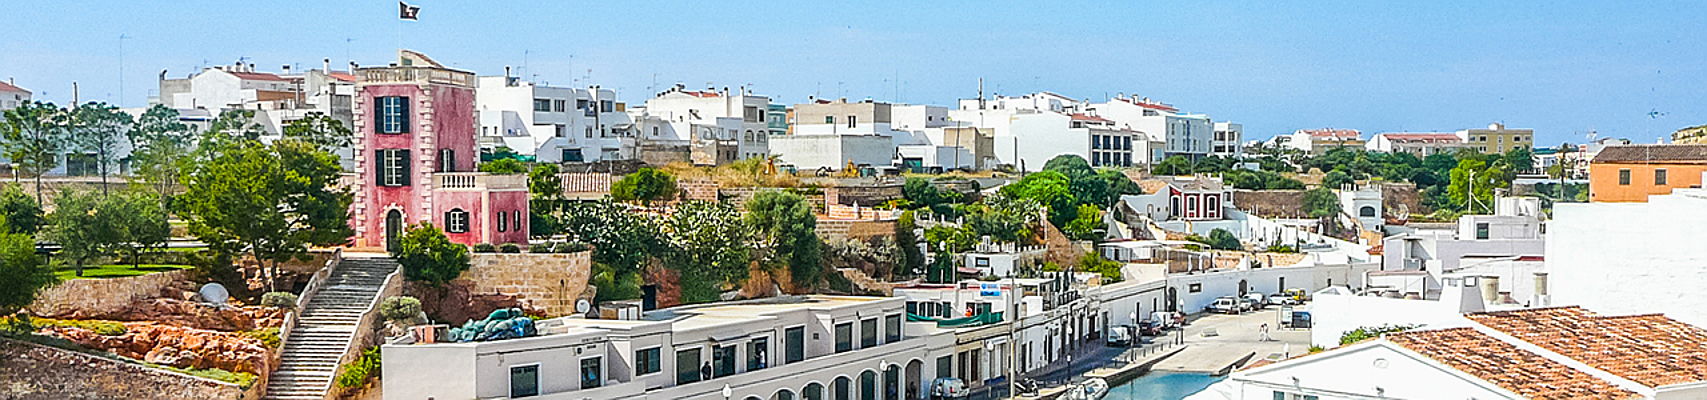  Mahón
- Menorca - Ciutadella